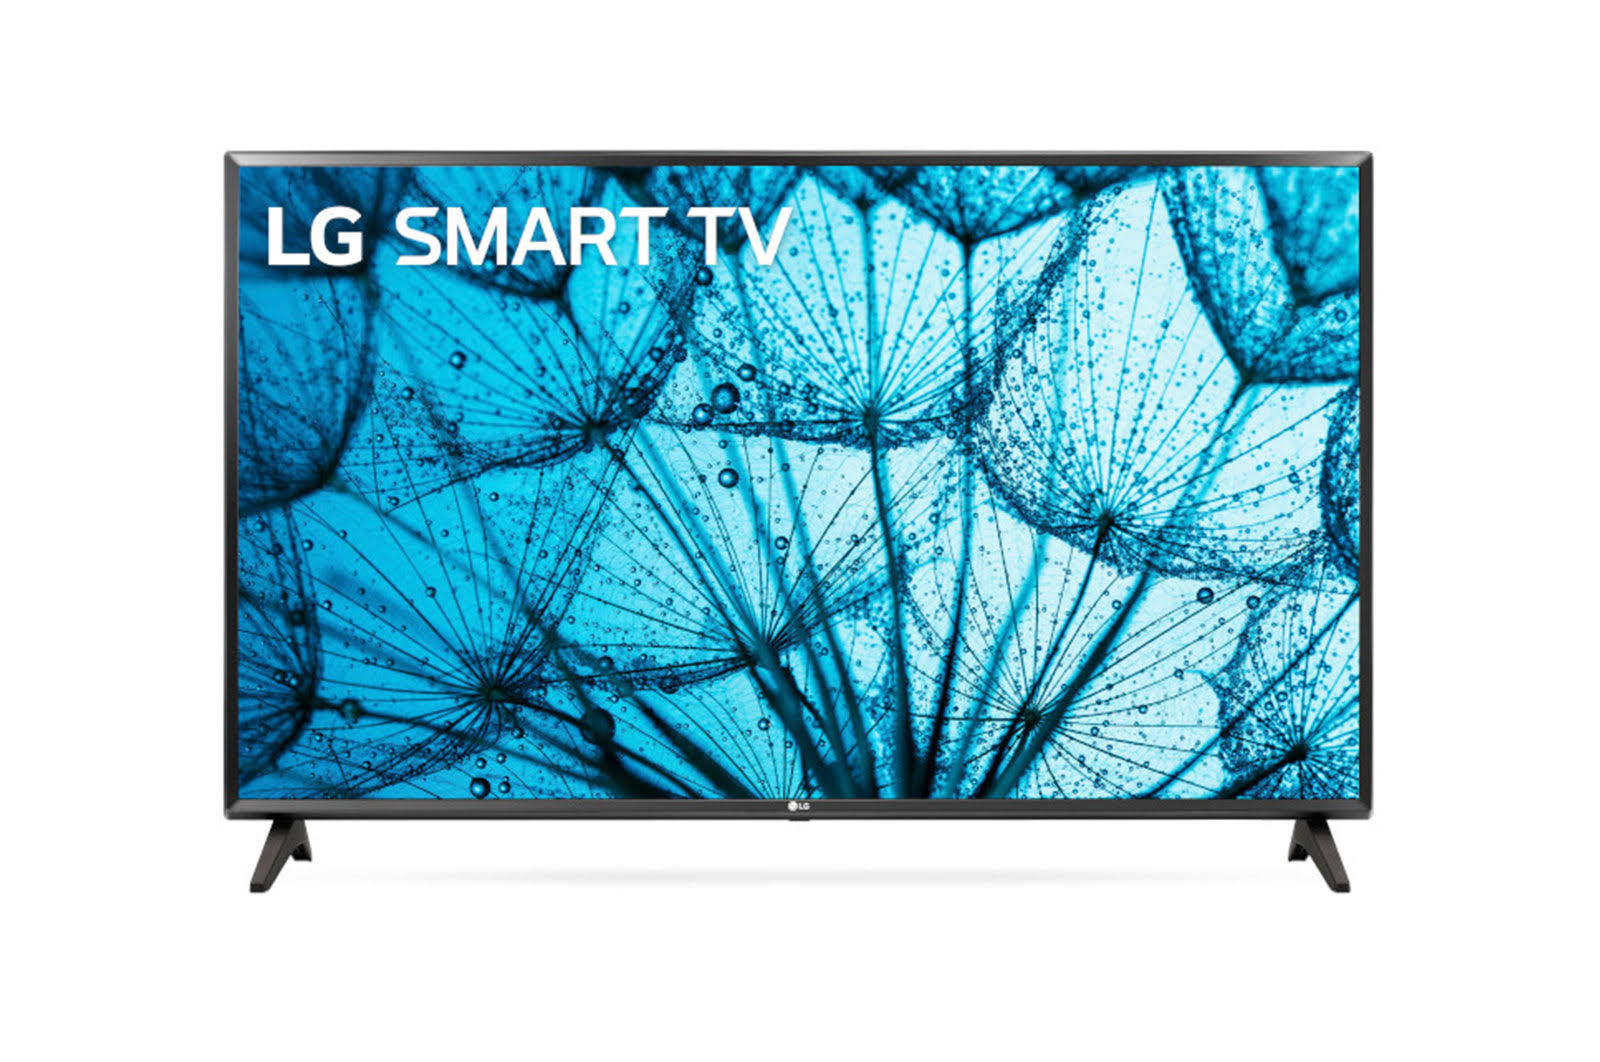 LG 32" HD LED Smart TV-32LM577BPUA